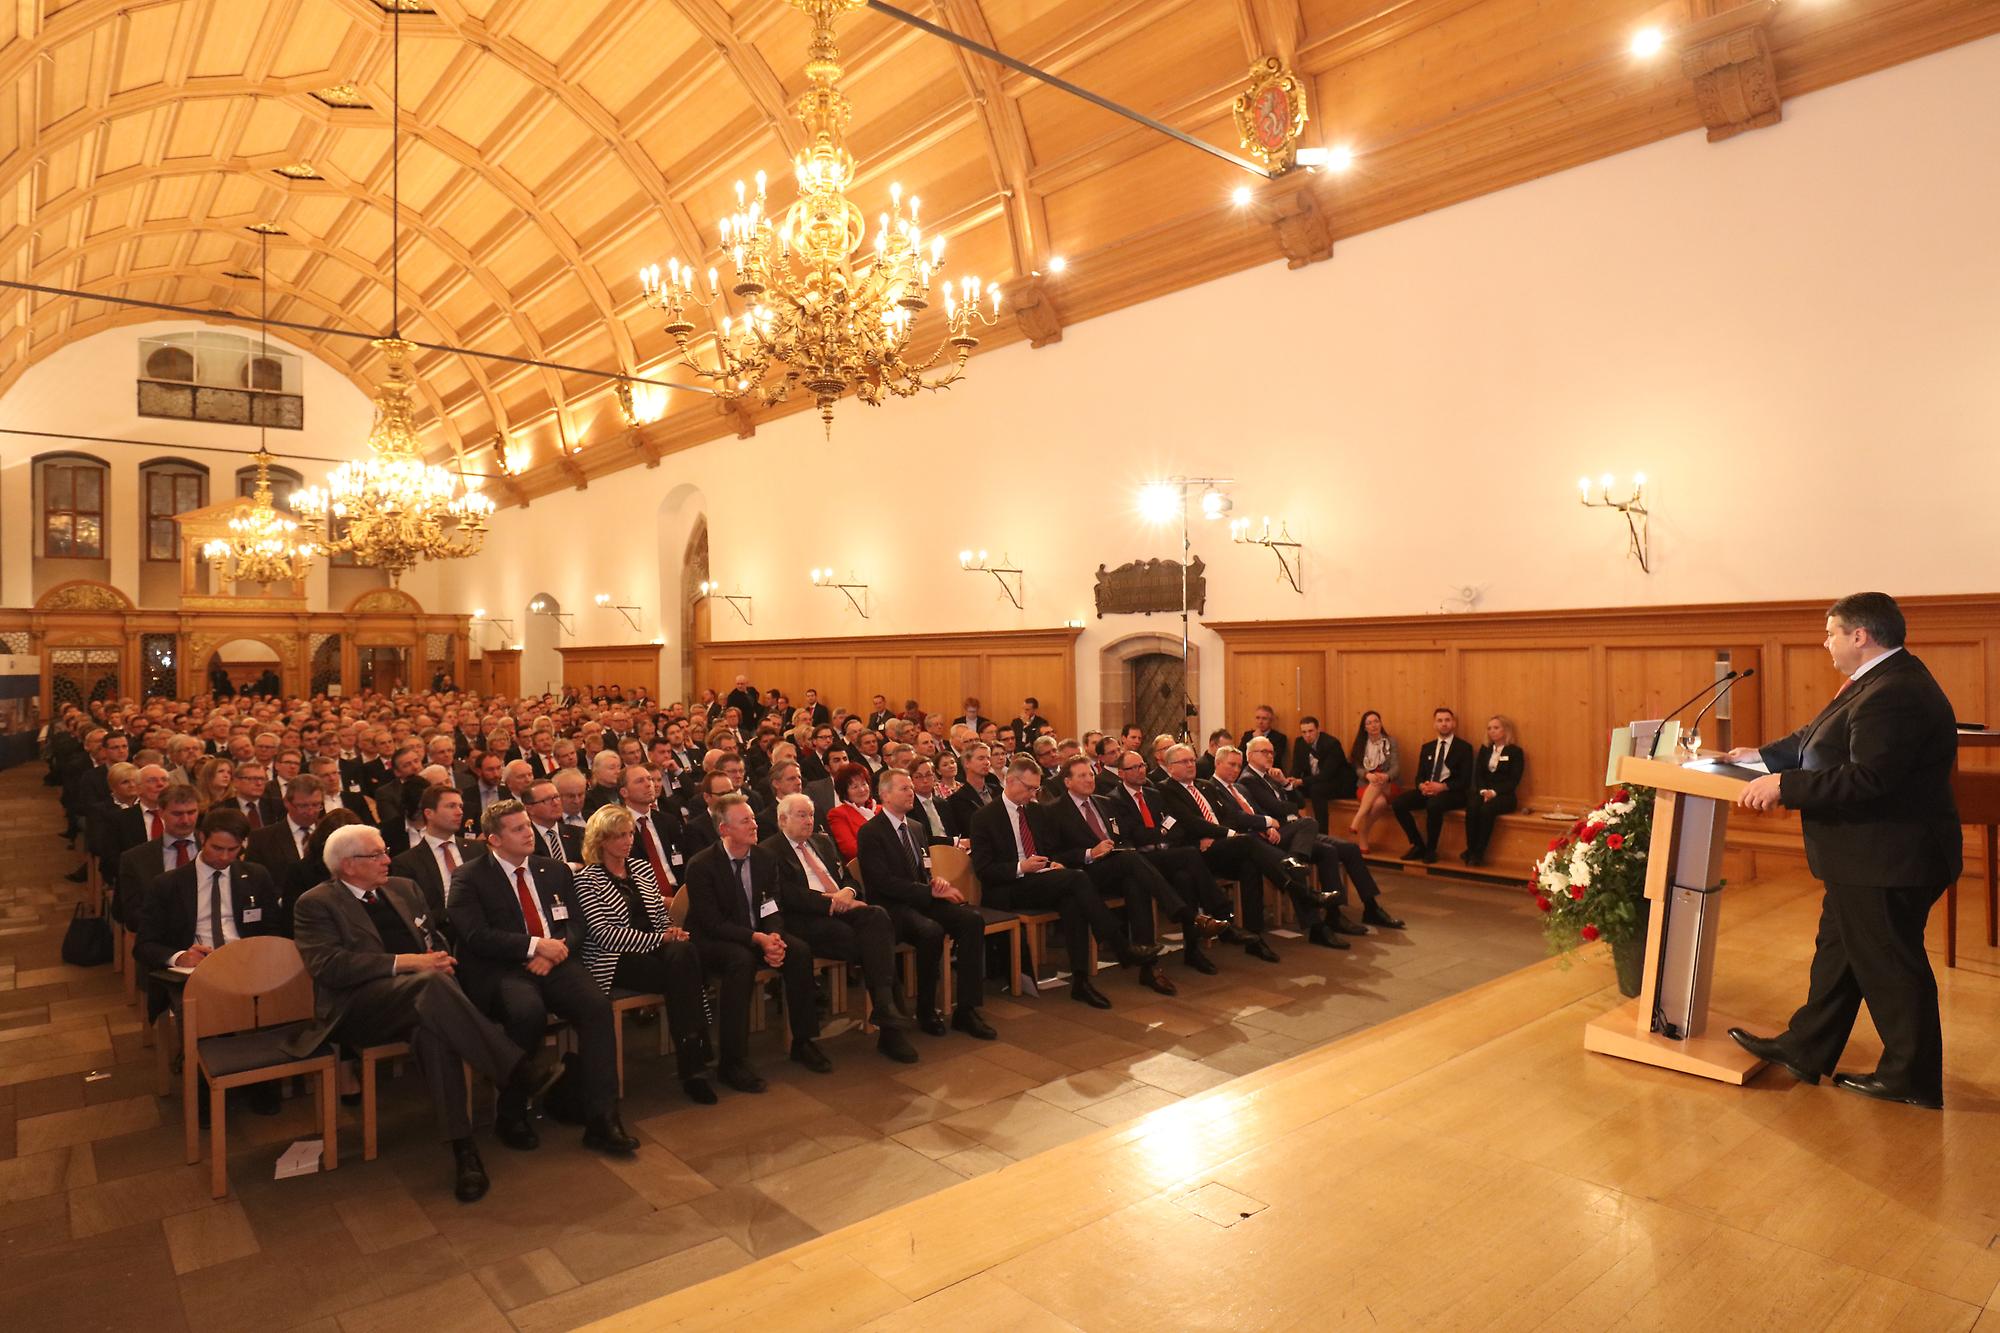 Rund 400 Gäste waren zum Kammergespräch in den historischen Rathaussaal gekommen.